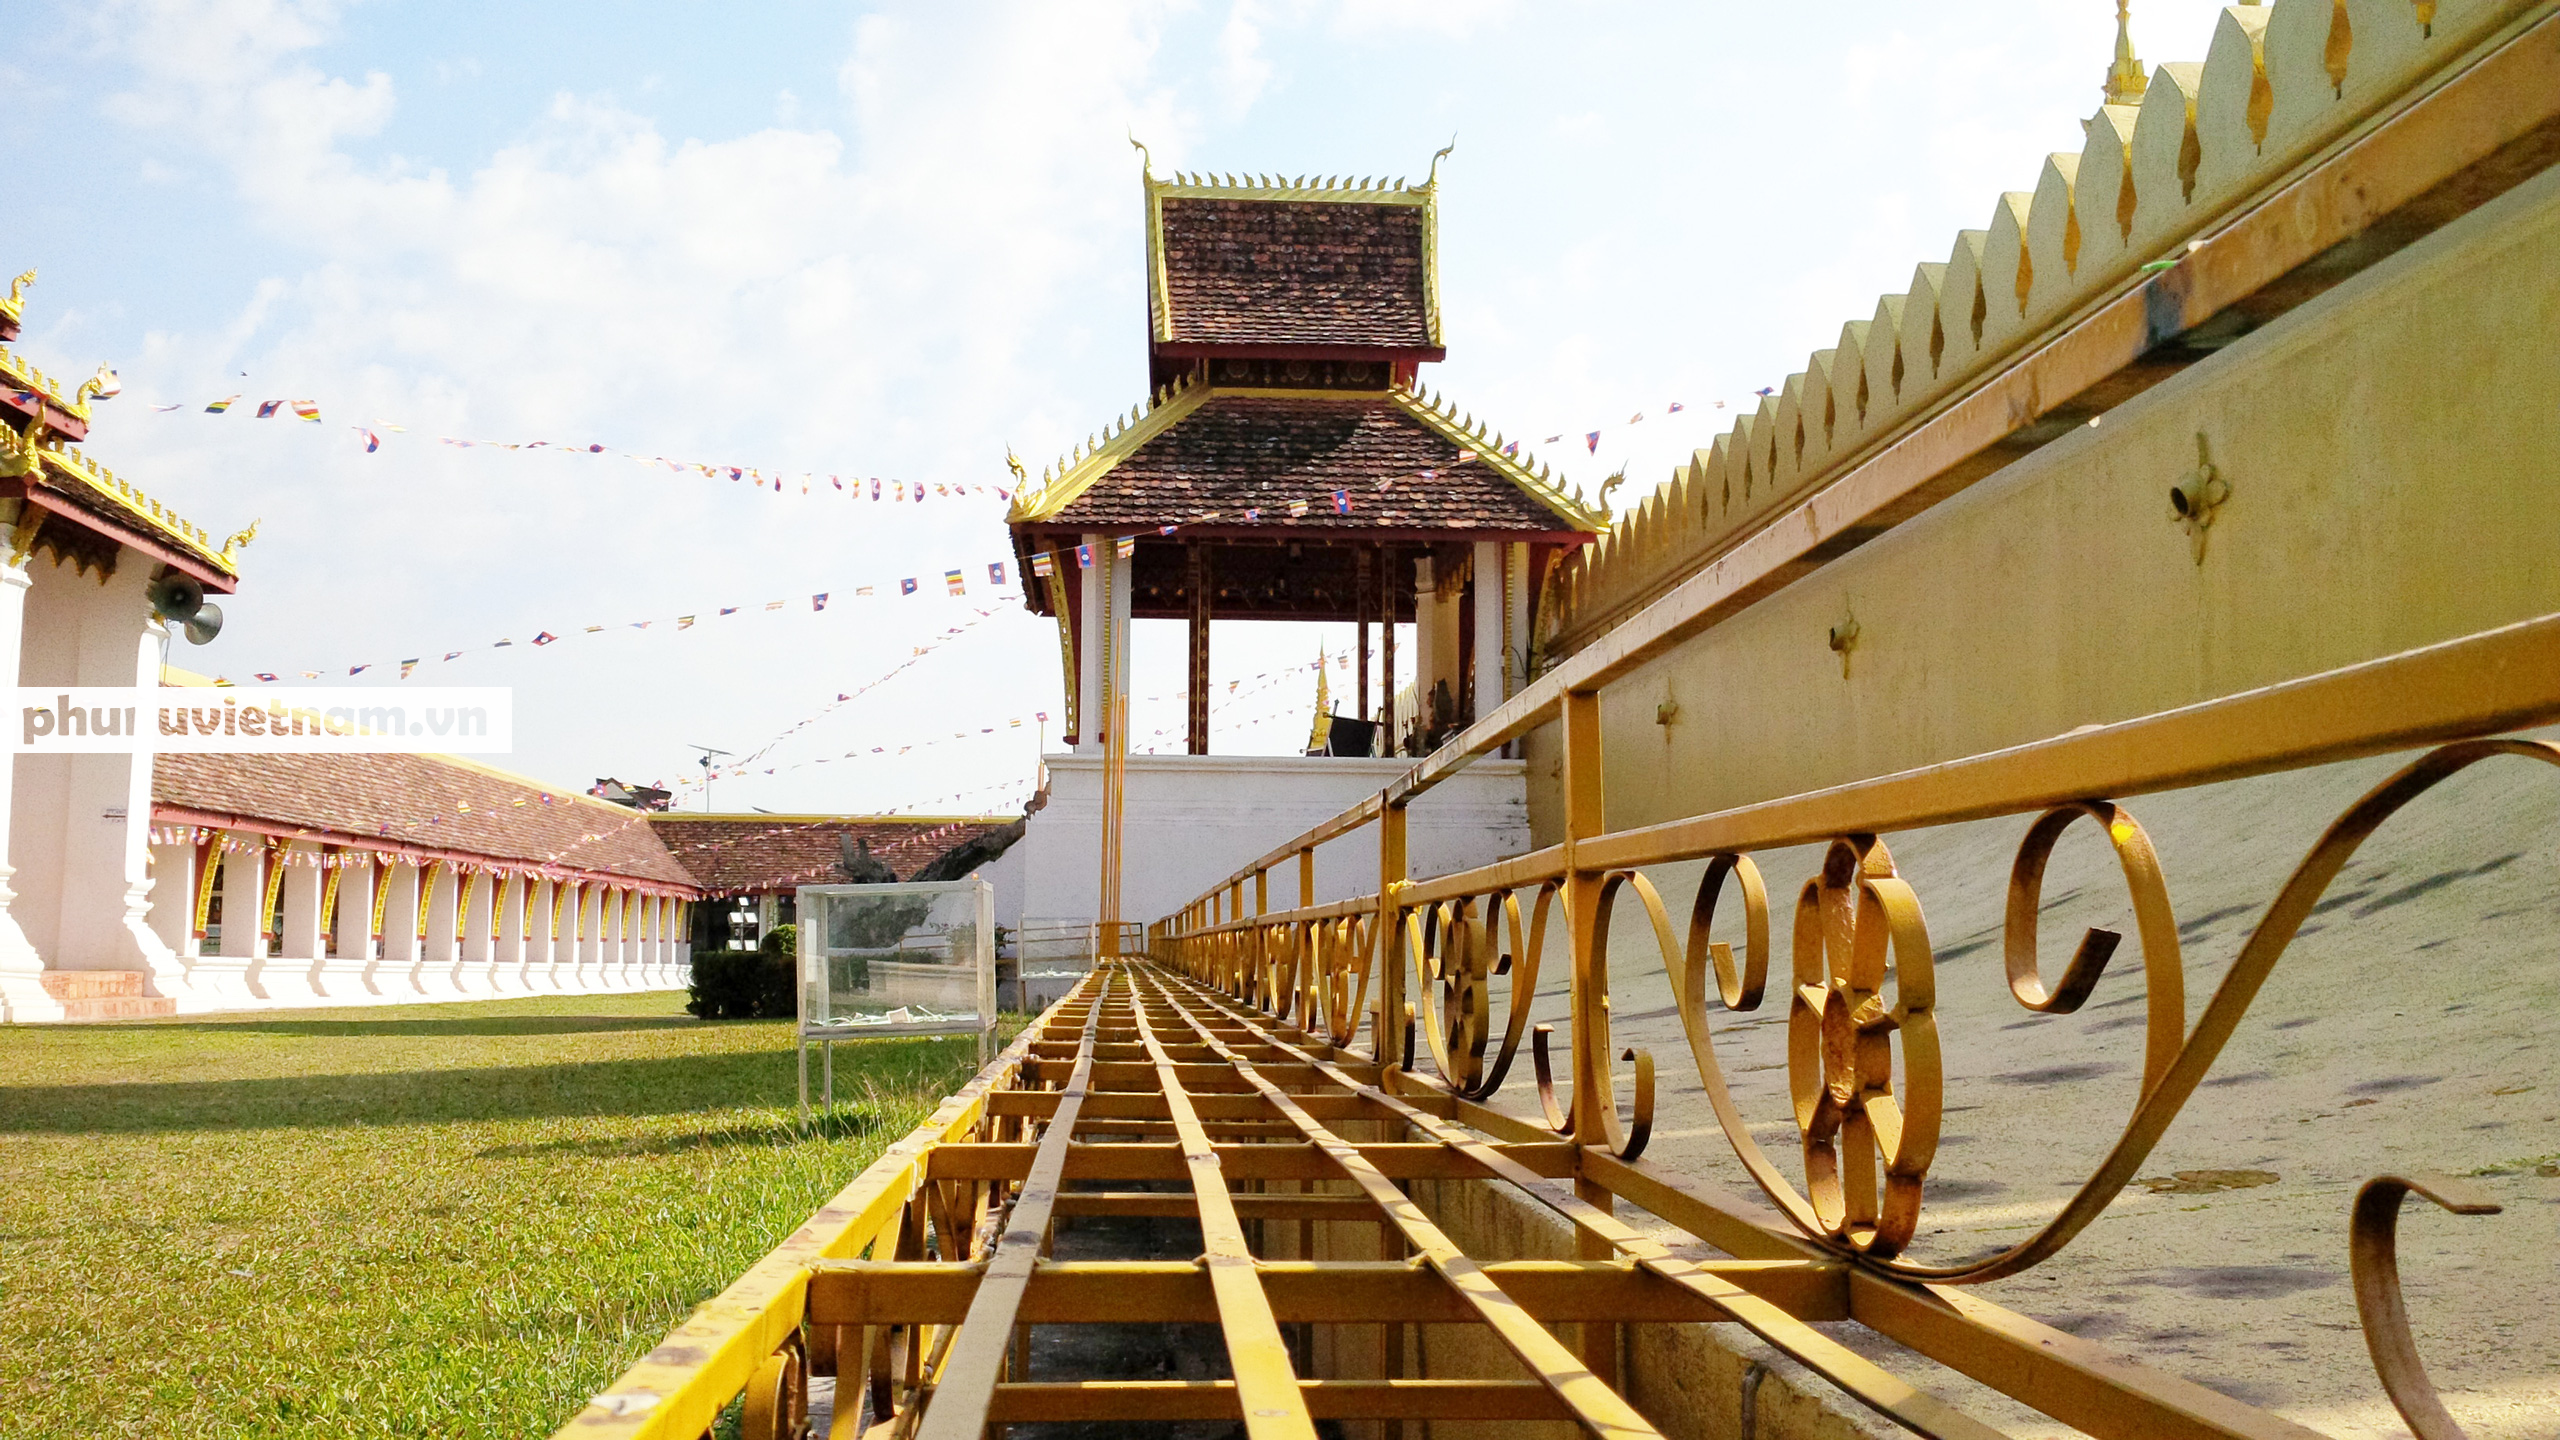 Chiêm ngưỡng ngôi tháp vàng lớn nhất của Lào, gần 500 tuổi tráng lệ giữa đất trời - Ảnh 9.